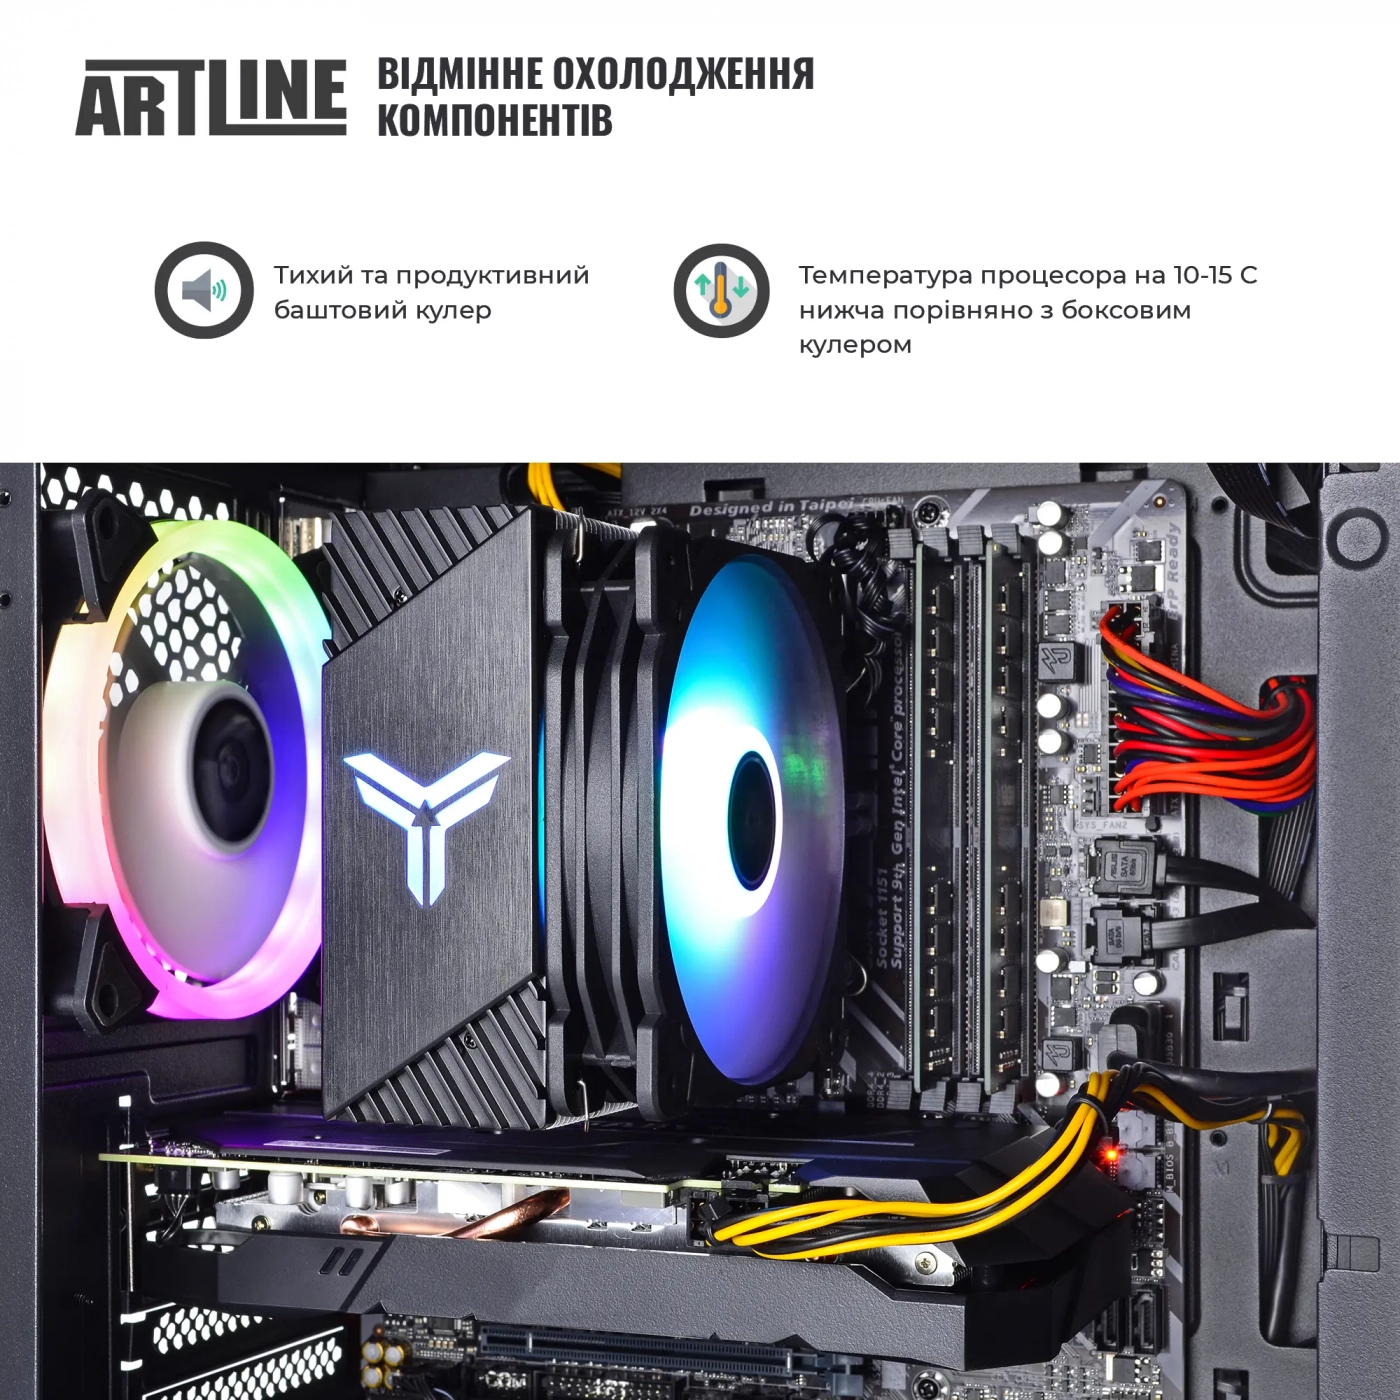 Купить Компьютер ARTLINE Gaming X63v22 - фото 3